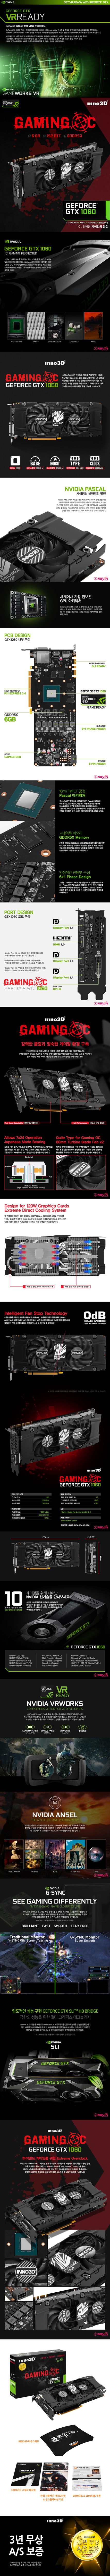 INNO3D 지포스 GTX 1060 GAMING O.C D5X 6GB 트윈쿨러 db.jpg